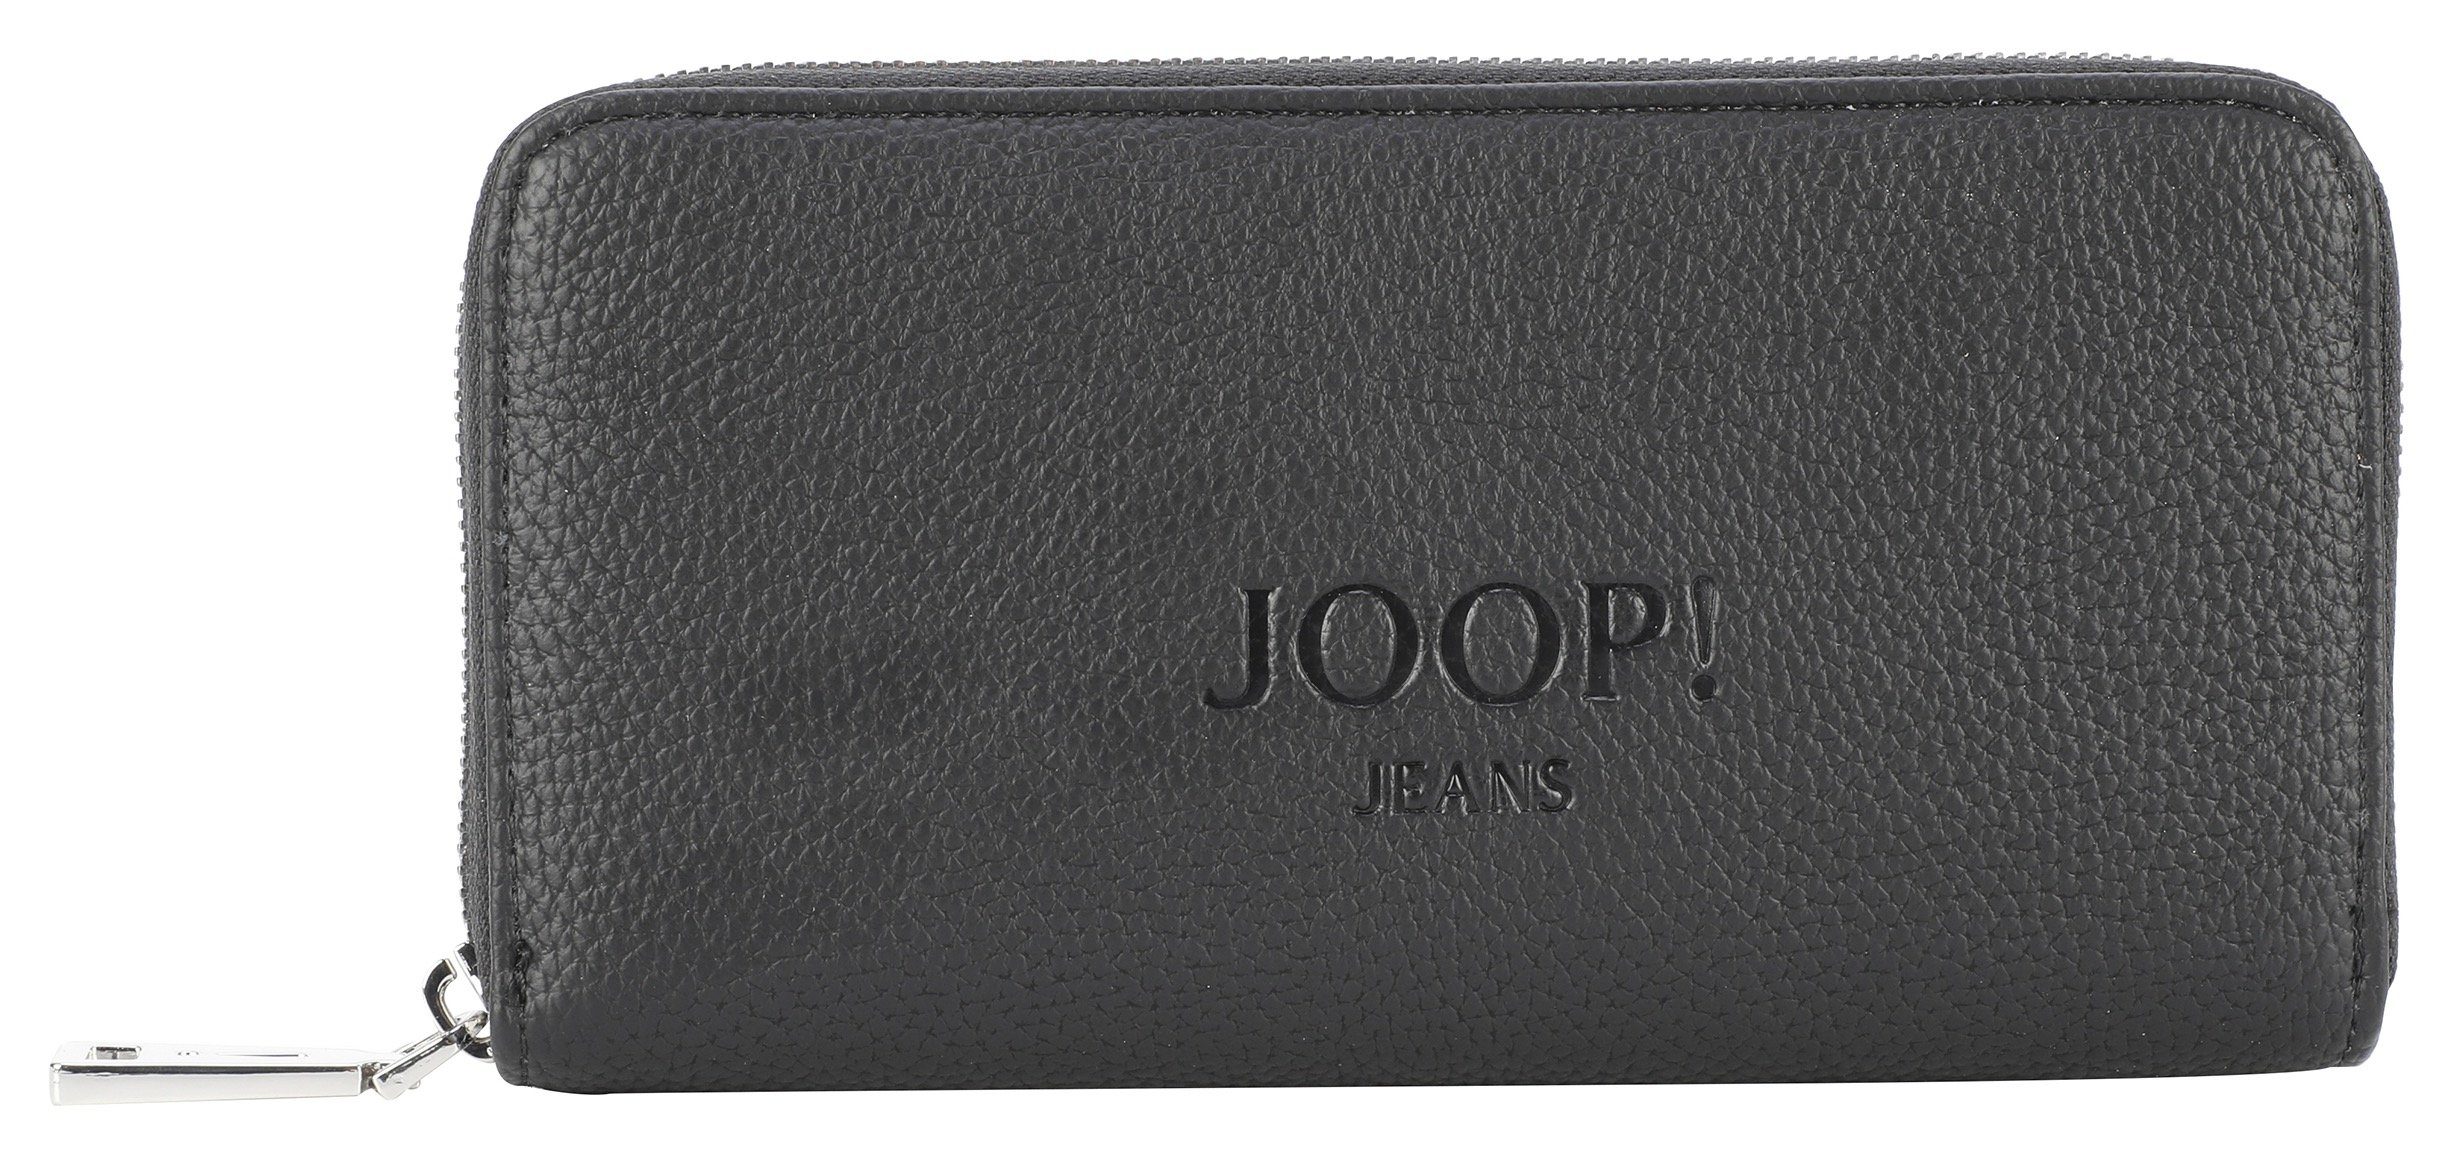 Jeans Geldbörse black melete 1.0 lh10z purse lettera Joop